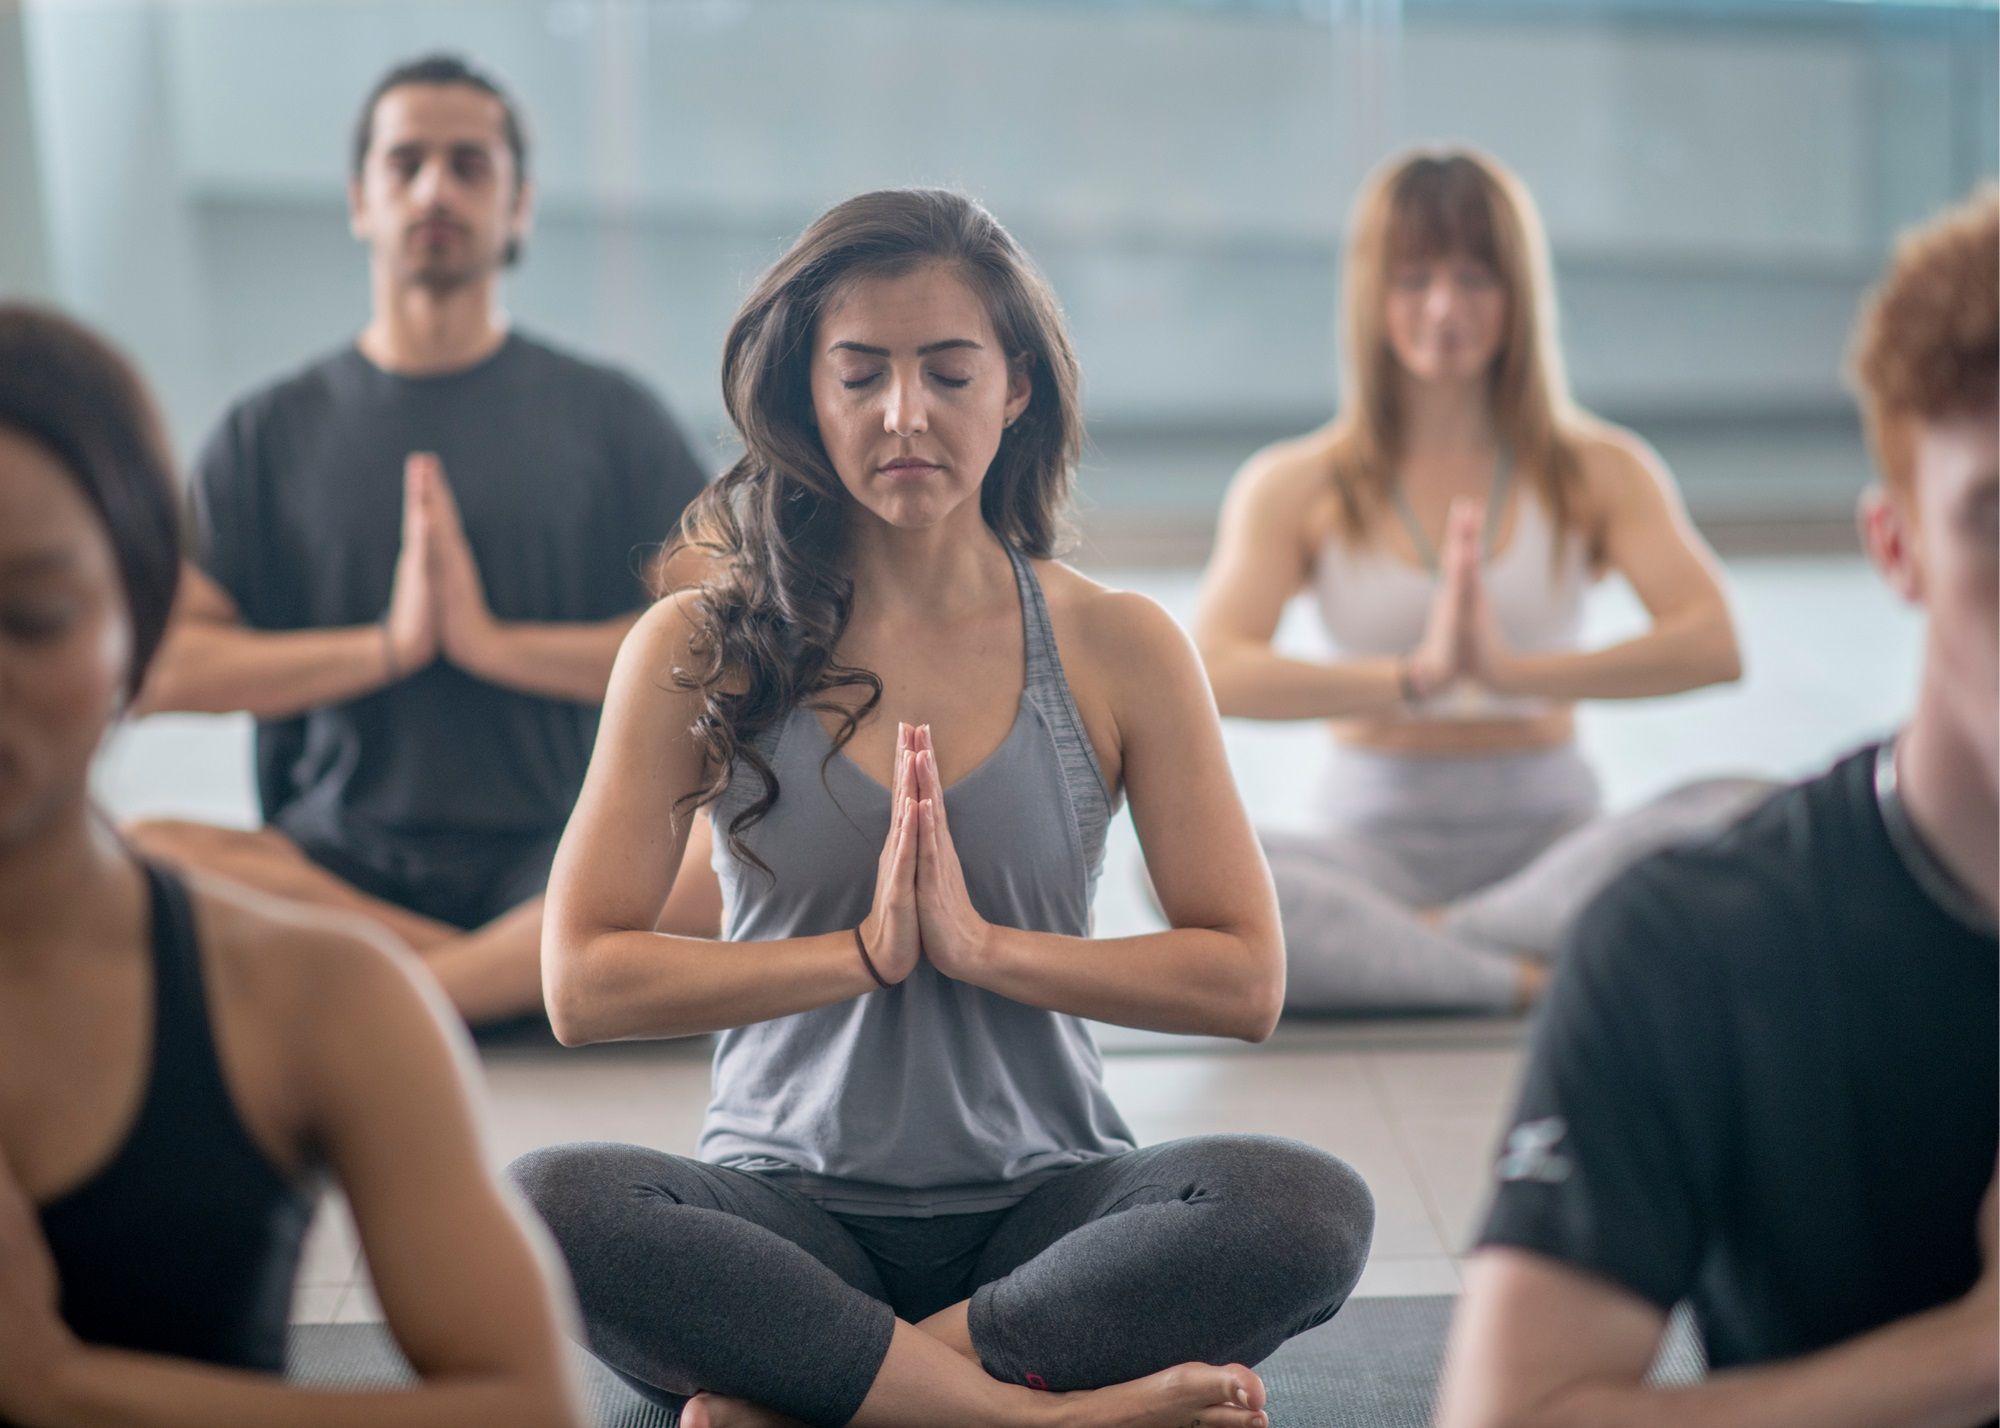 teaching yoga pdf